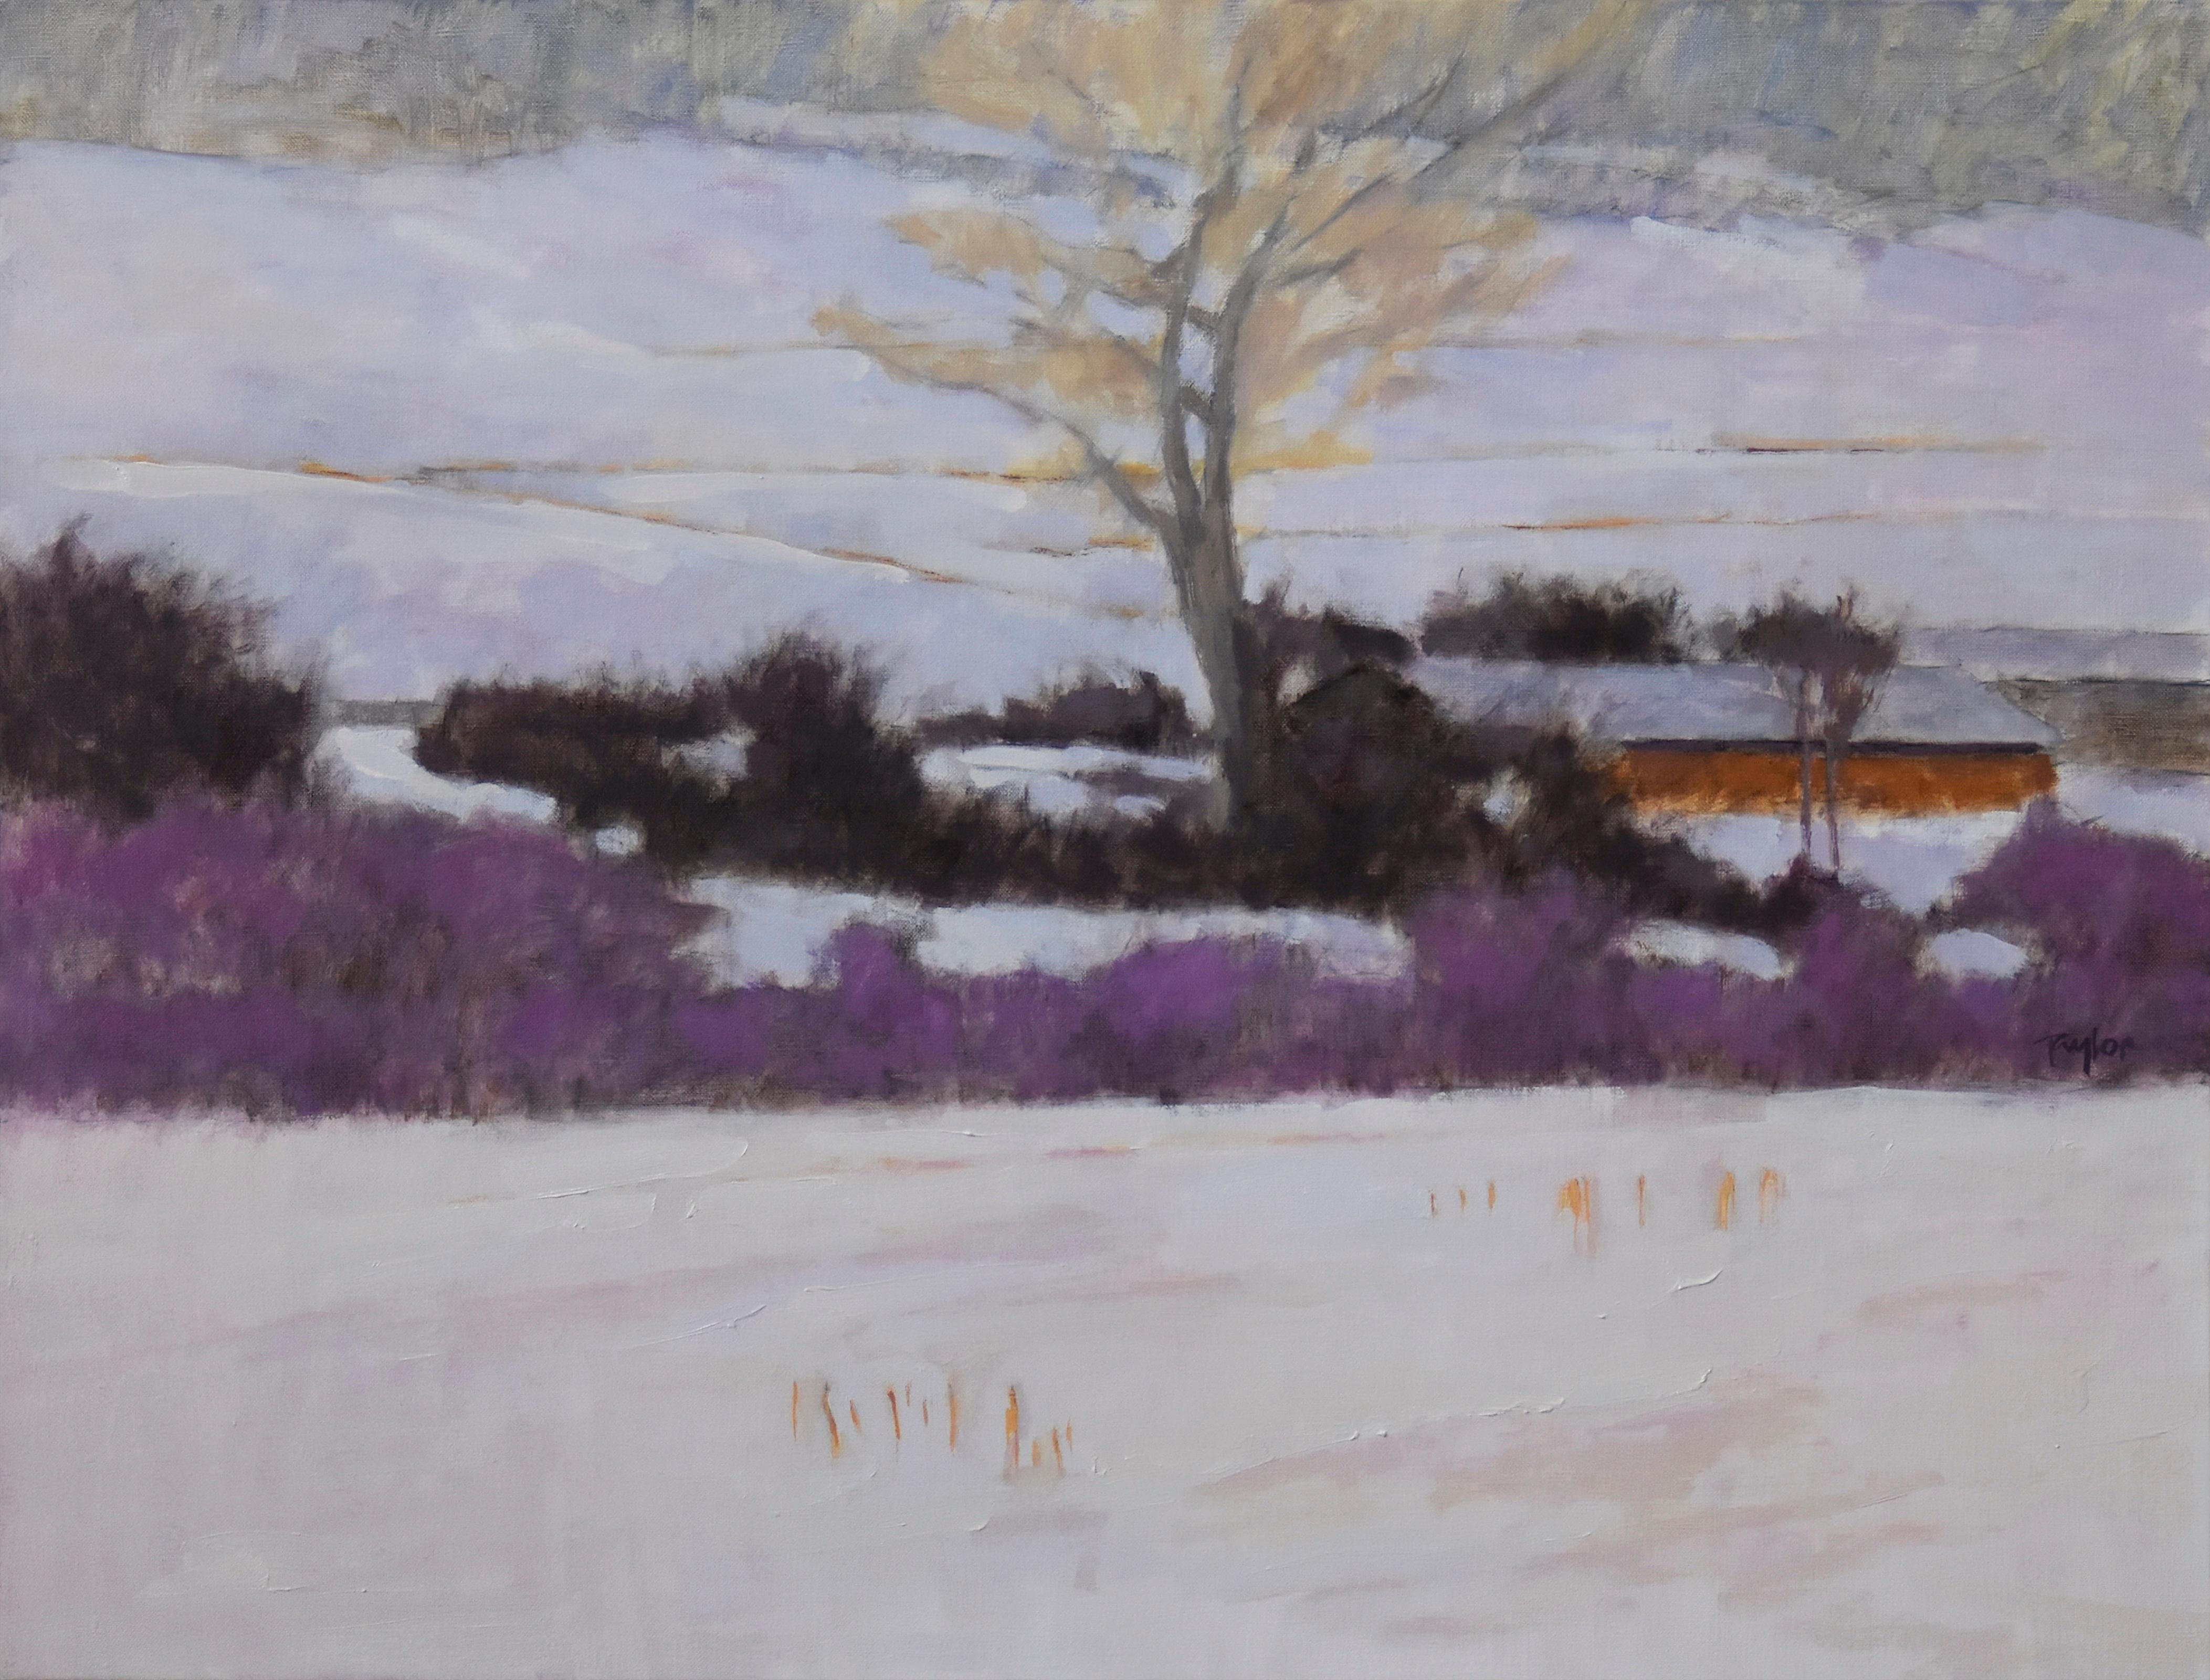 Andy Taylor Landscape Painting - El's Studio (landscape, building, winter, snow)